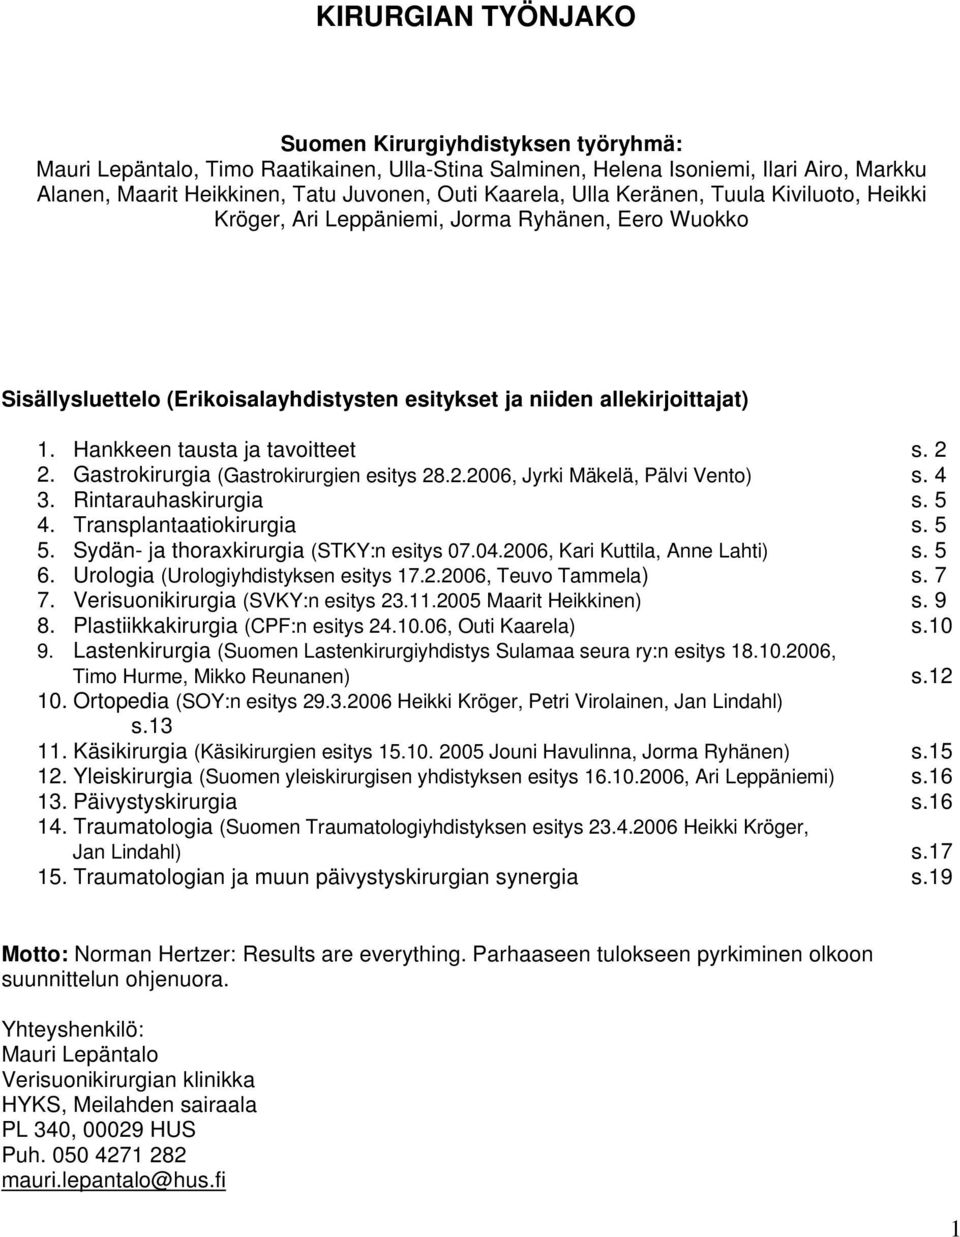 Hankkeen tausta ja tavoitteet s. 2 2. Gastrokirurgia (Gastrokirurgien esitys 28.2.2006, Jyrki Mäkelä, Pälvi Vento) s. 4 3. Rintarauhaskirurgia s. 5 4. Transplantaatiokirurgia s. 5 5.